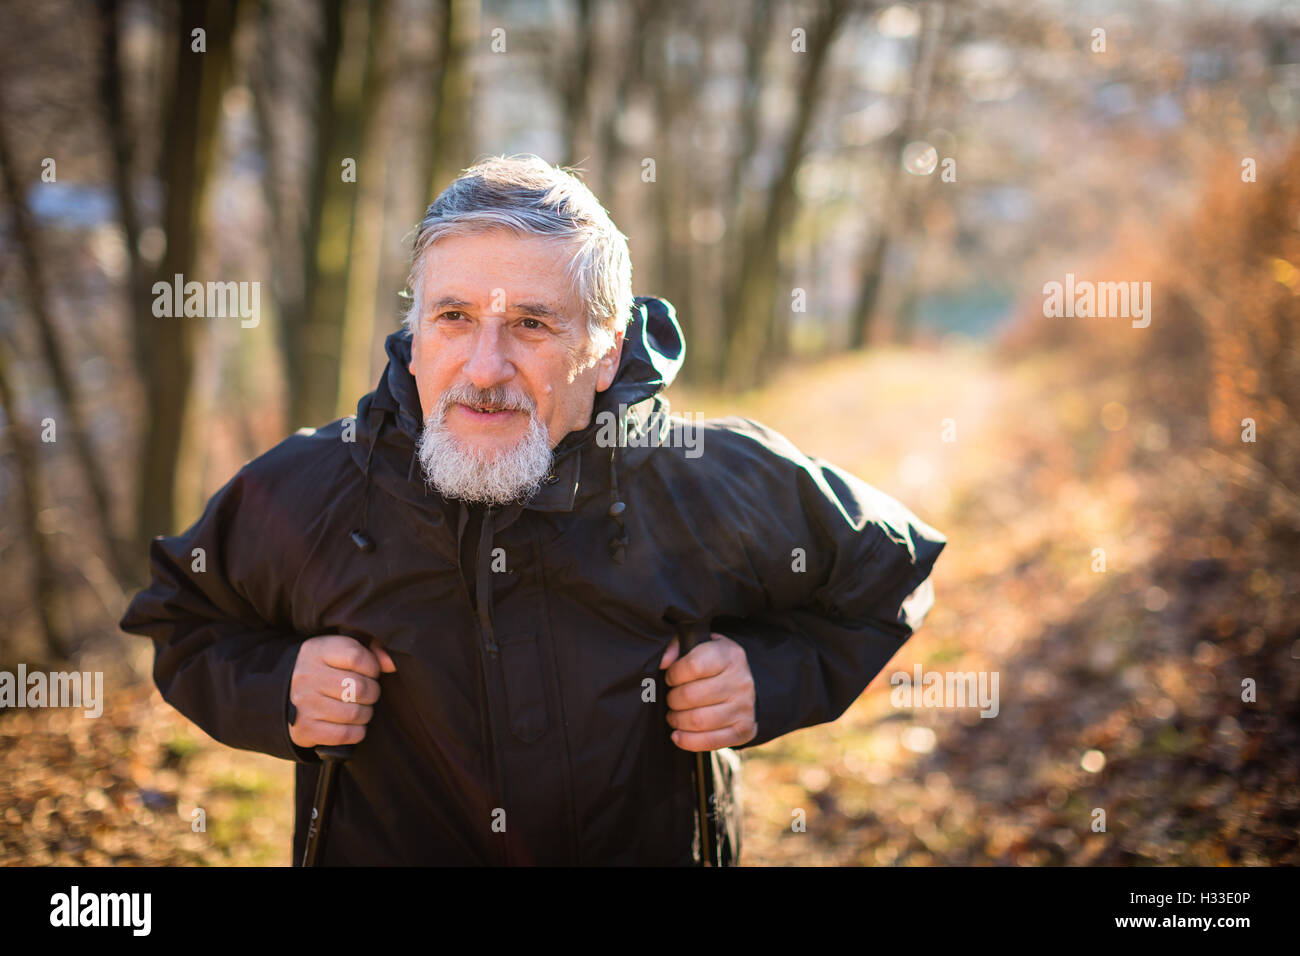 Senior man nordic walking, enjoying the outdoors Stock Photo